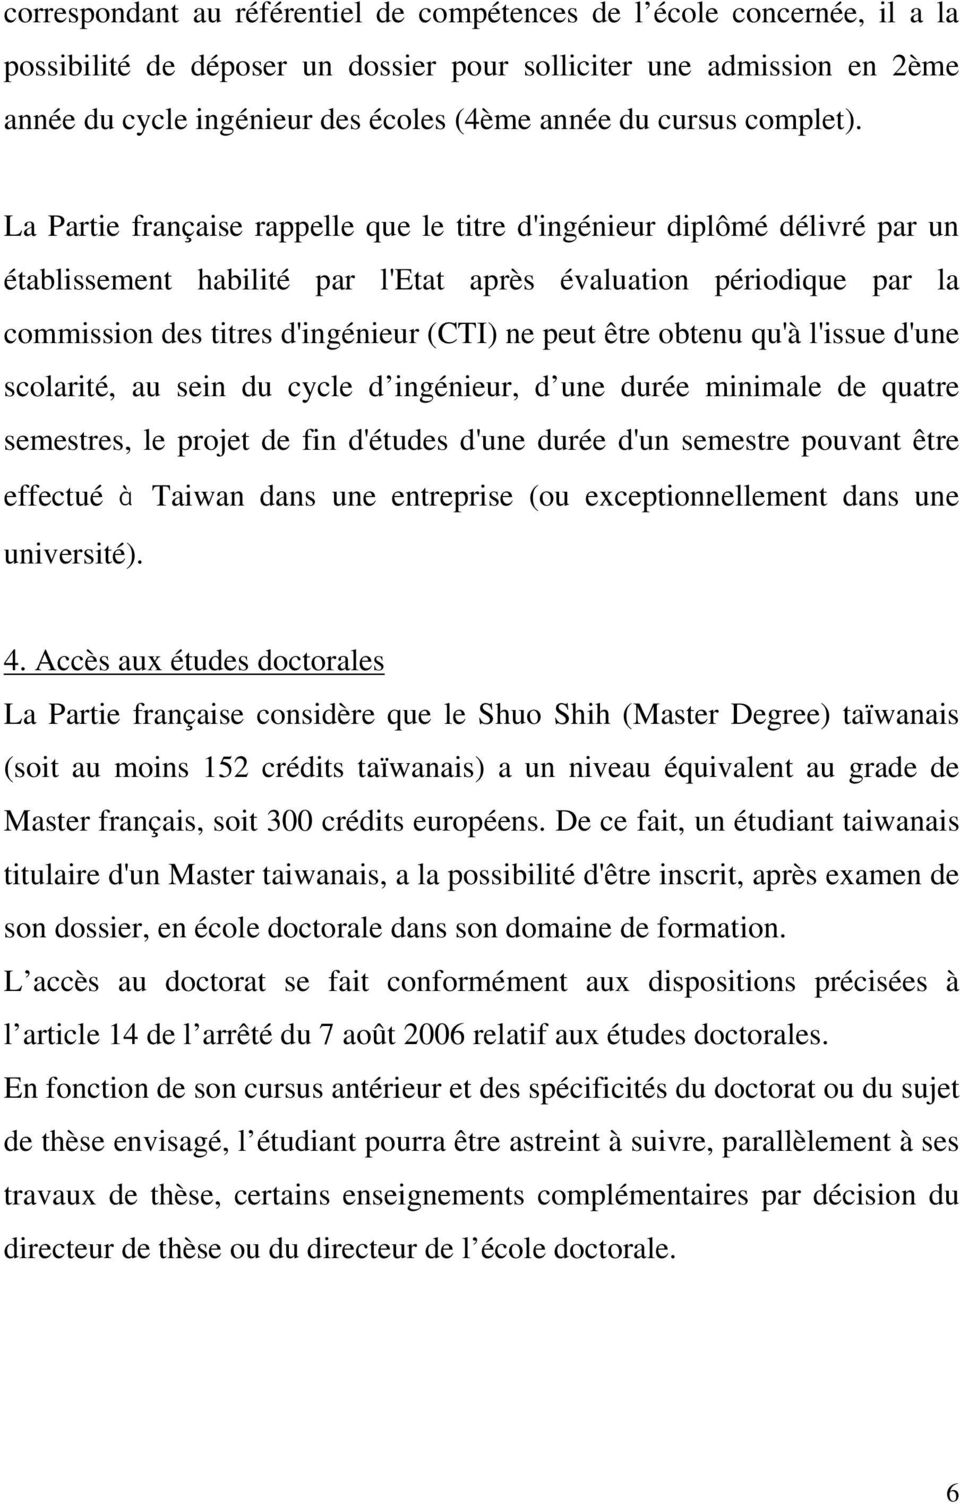 La Partie française rappelle que le titre d'ingénieur diplômé délivré par un établissement habilité par l'etat après évaluation périodique par la commission des titres d'ingénieur (CTI) ne peut être